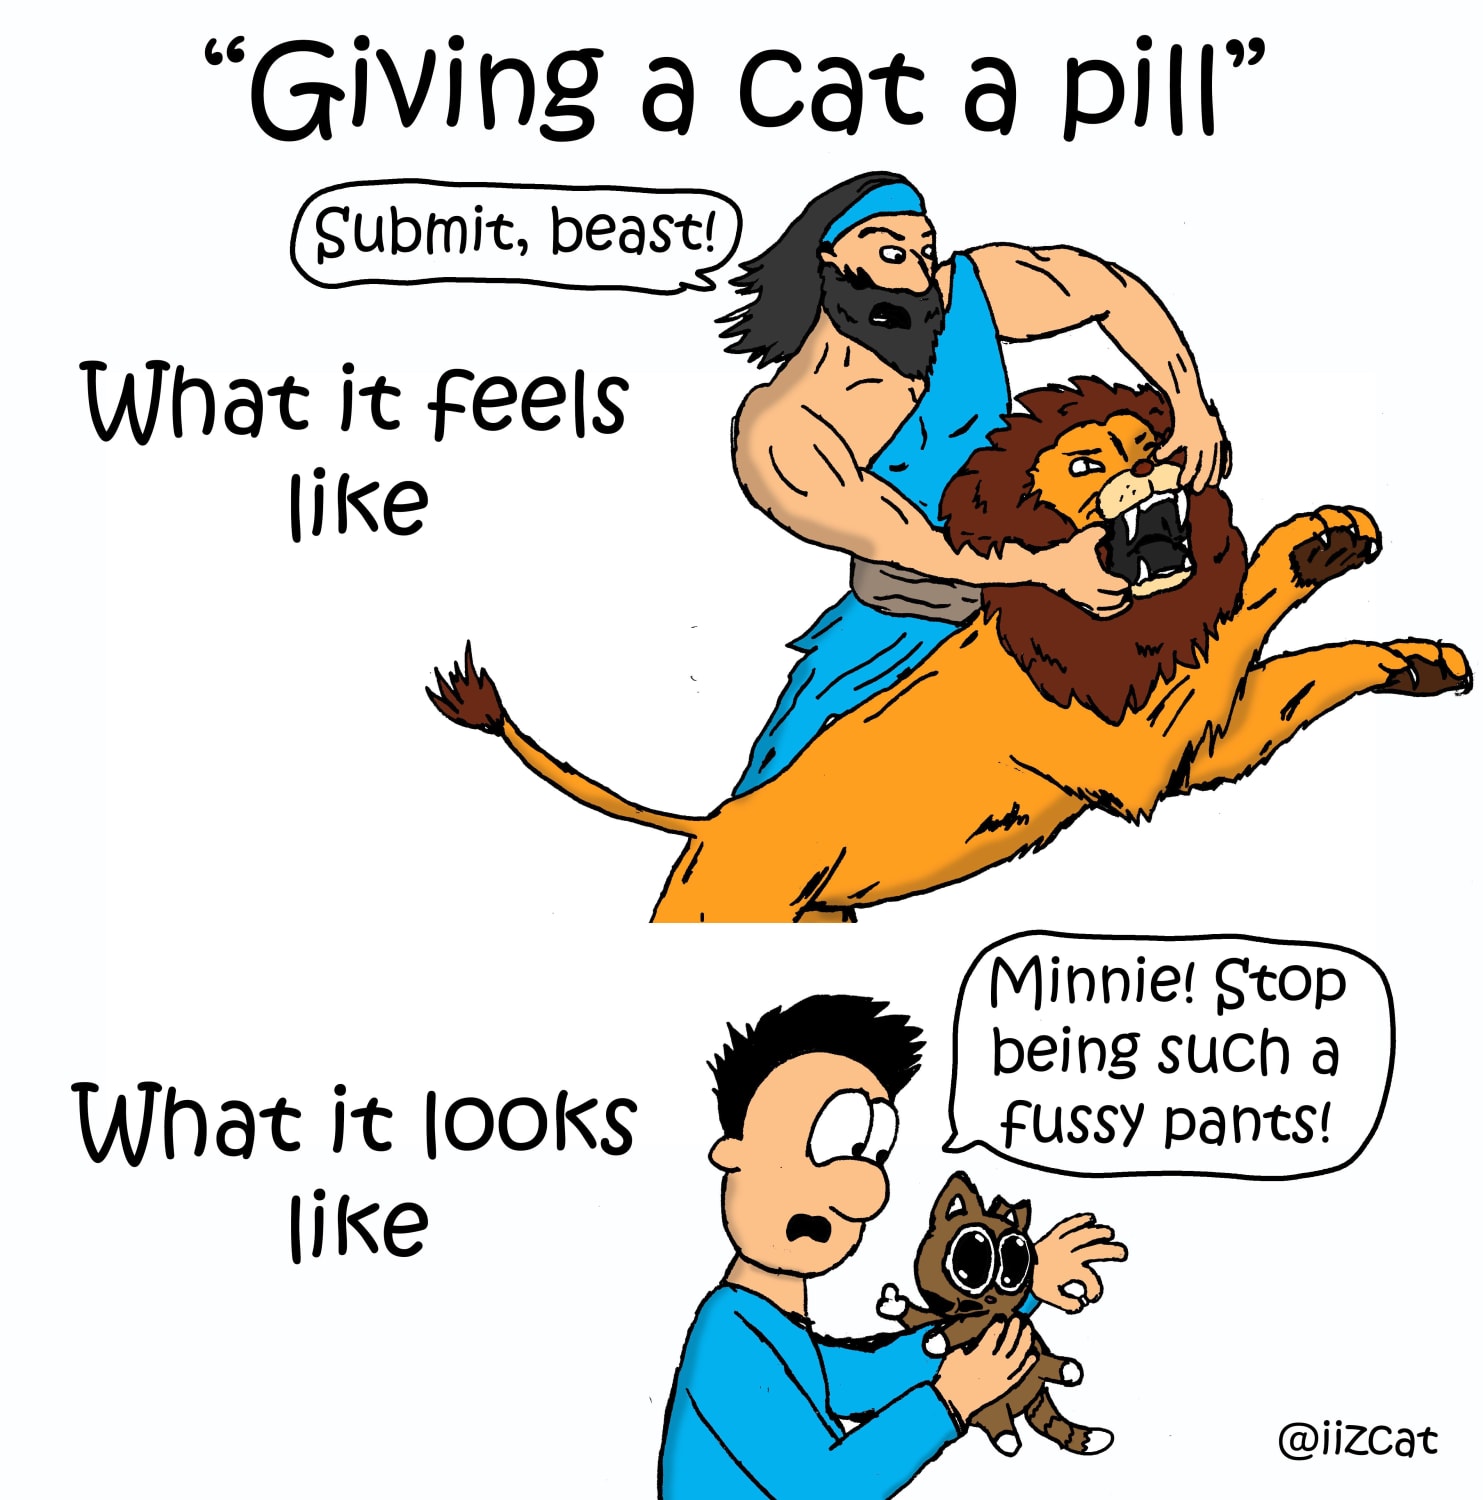 Giving a cat a pill